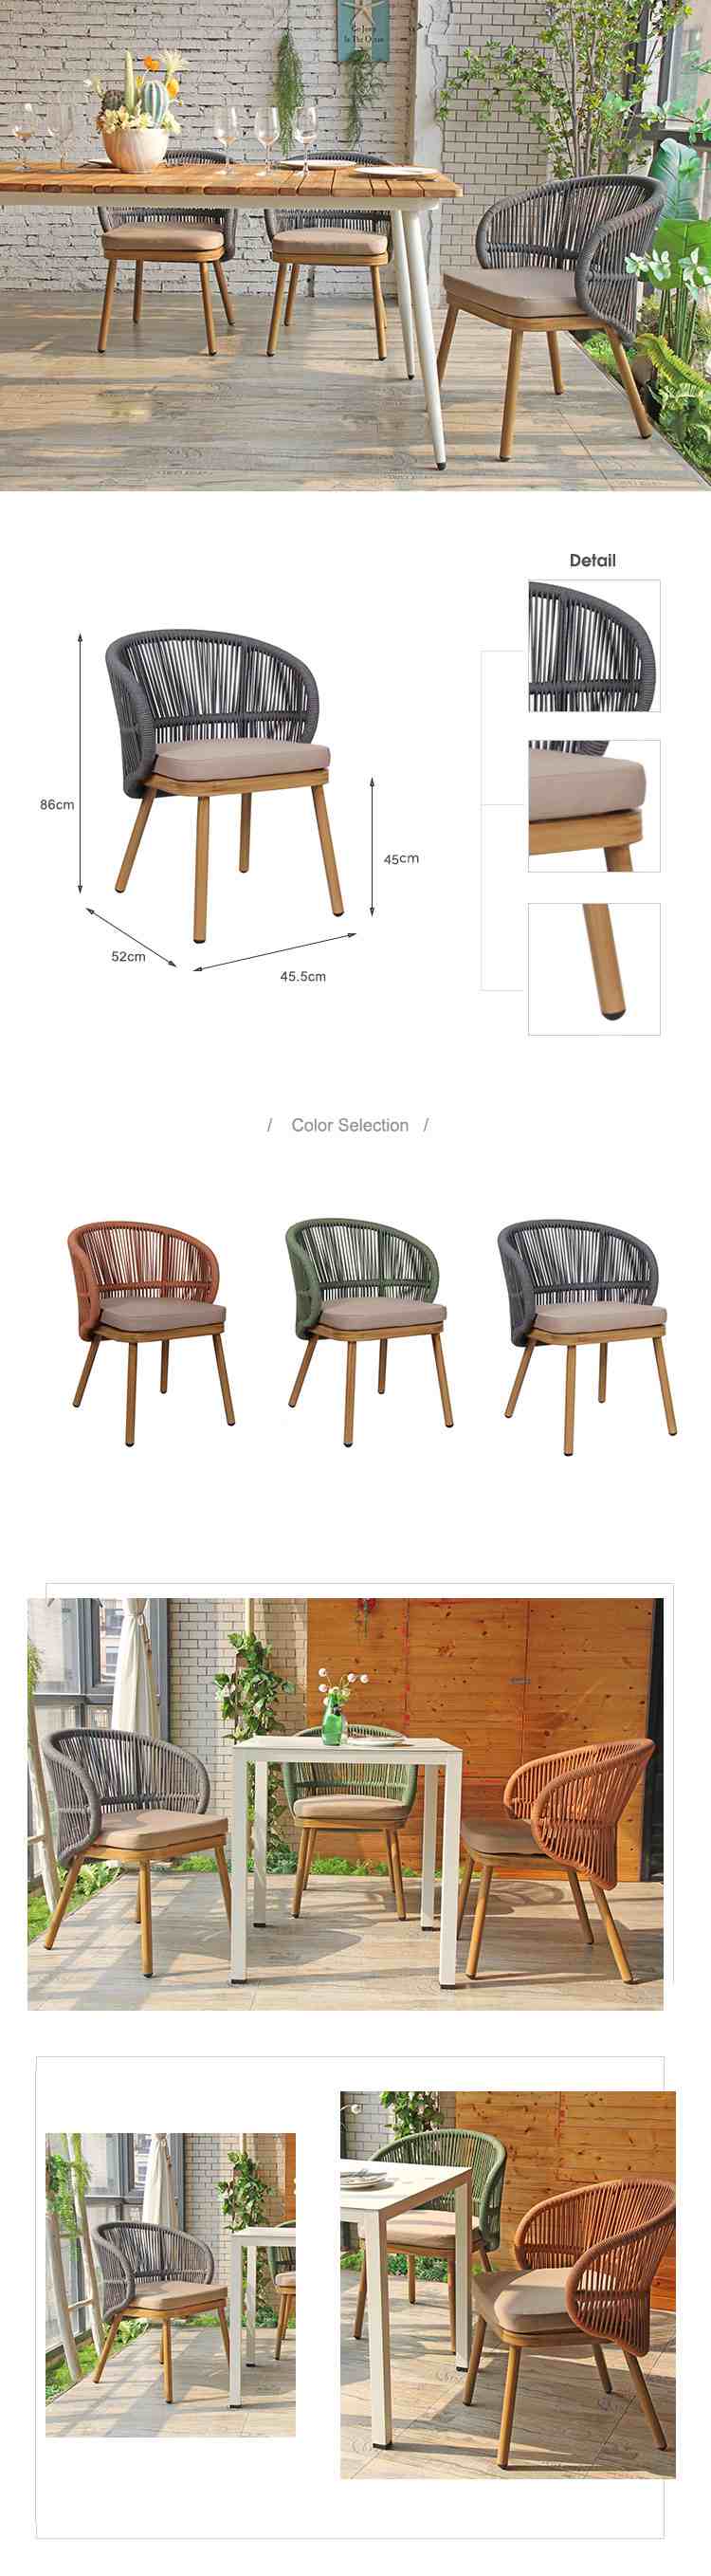 Garden Cane Chair